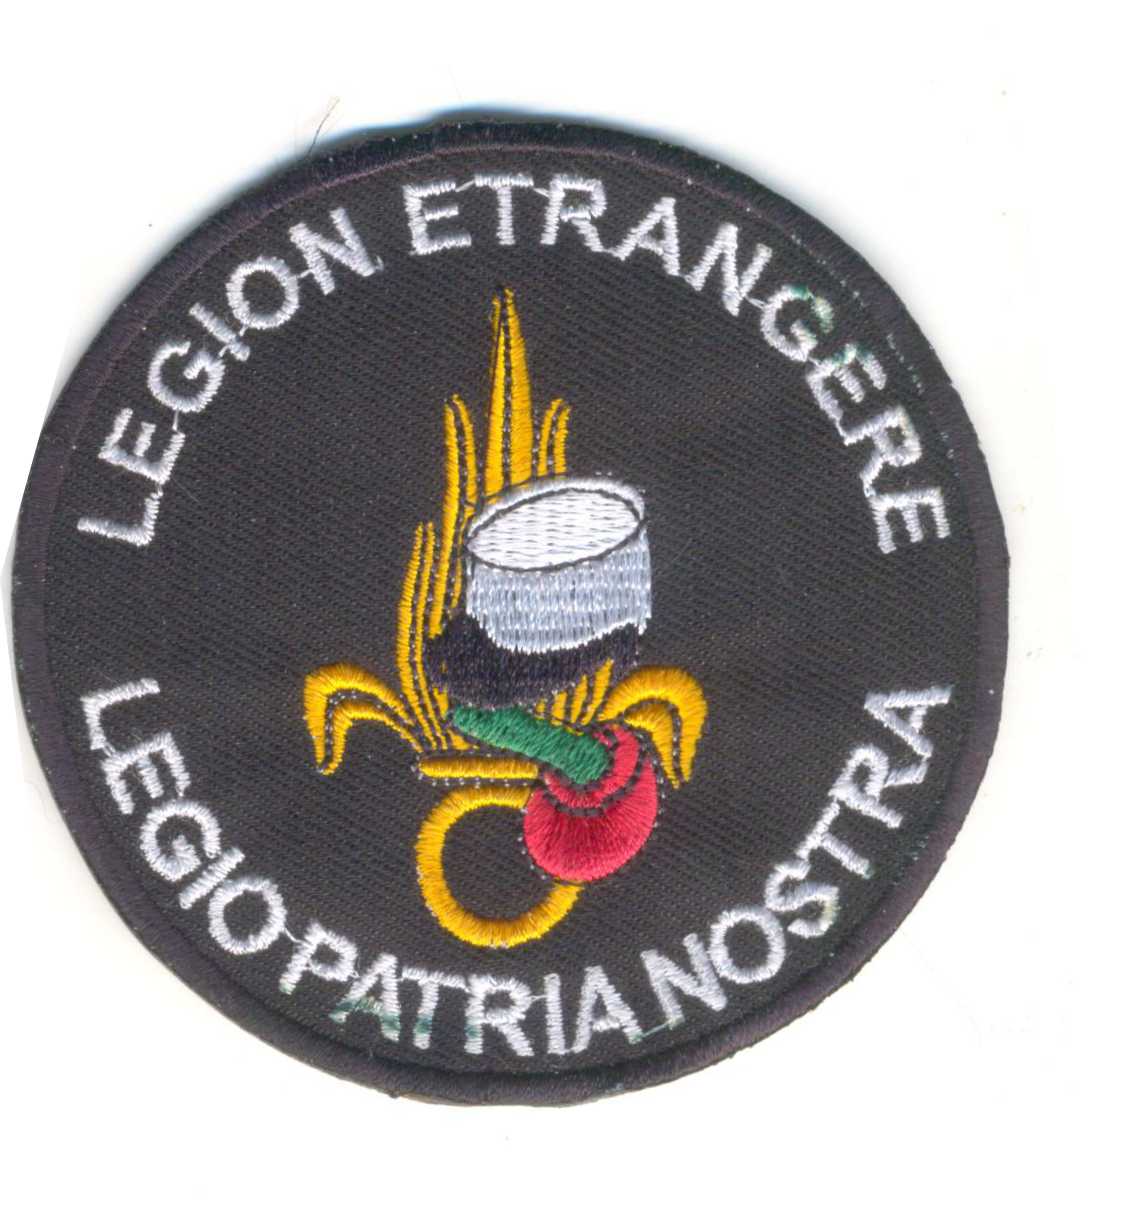  Legion Etrangere Patch